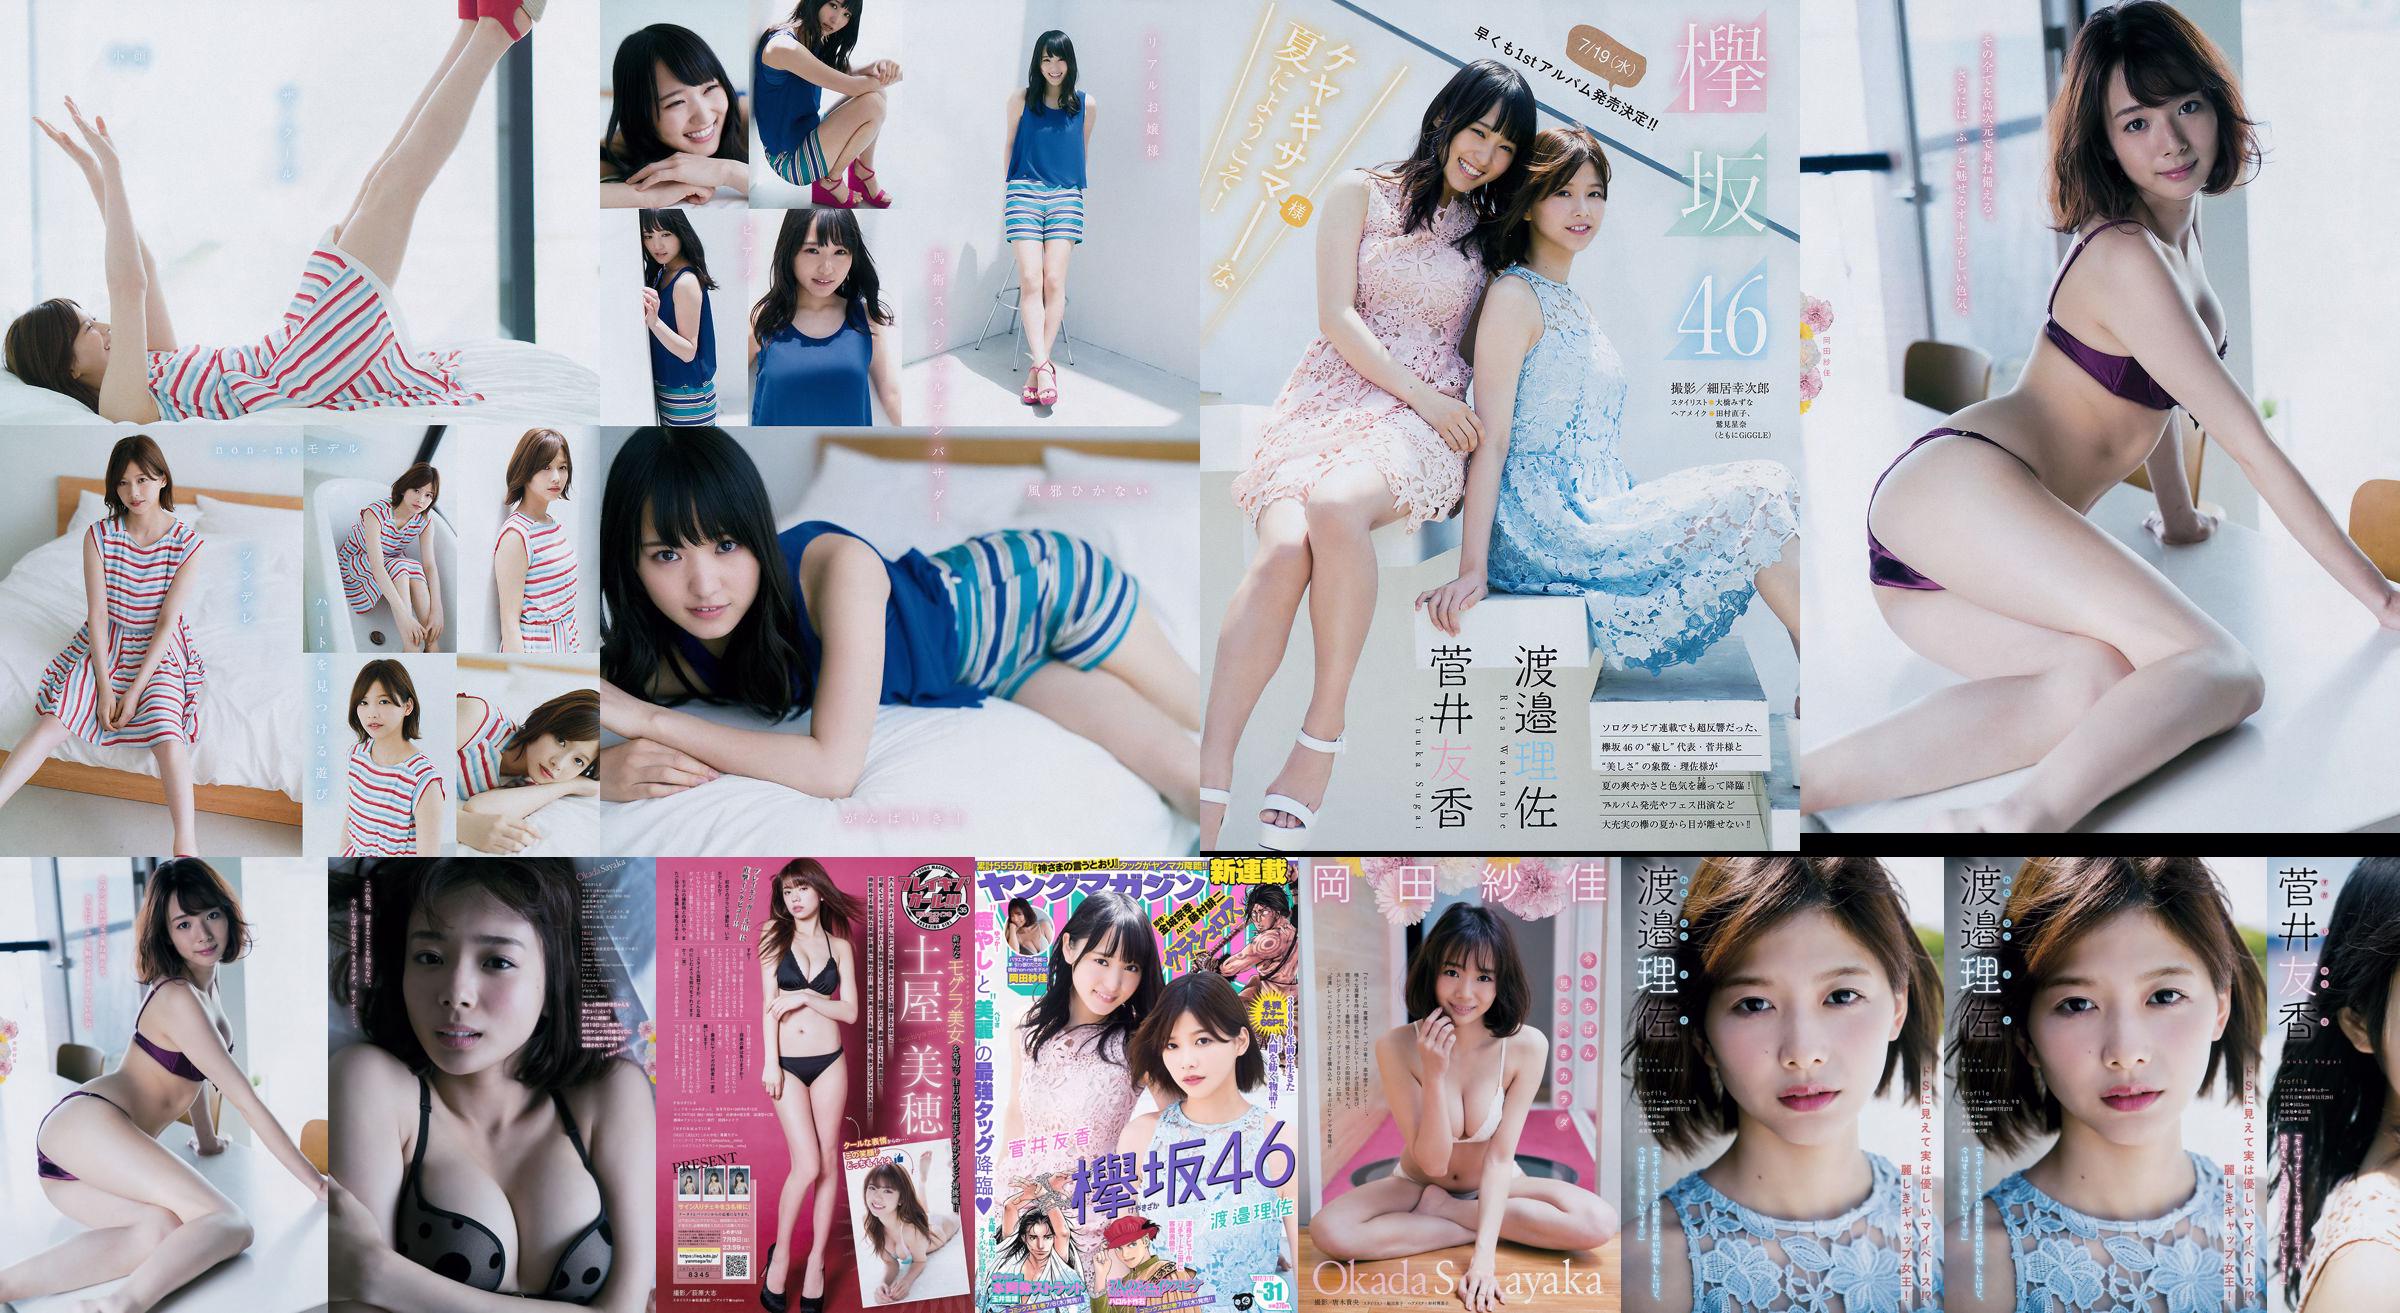 [Young Magazine] Watanabe Risa, Sugai Yuka, Okada Saika 2017 No.31 Photo Magazine No.84d0fd Página 1